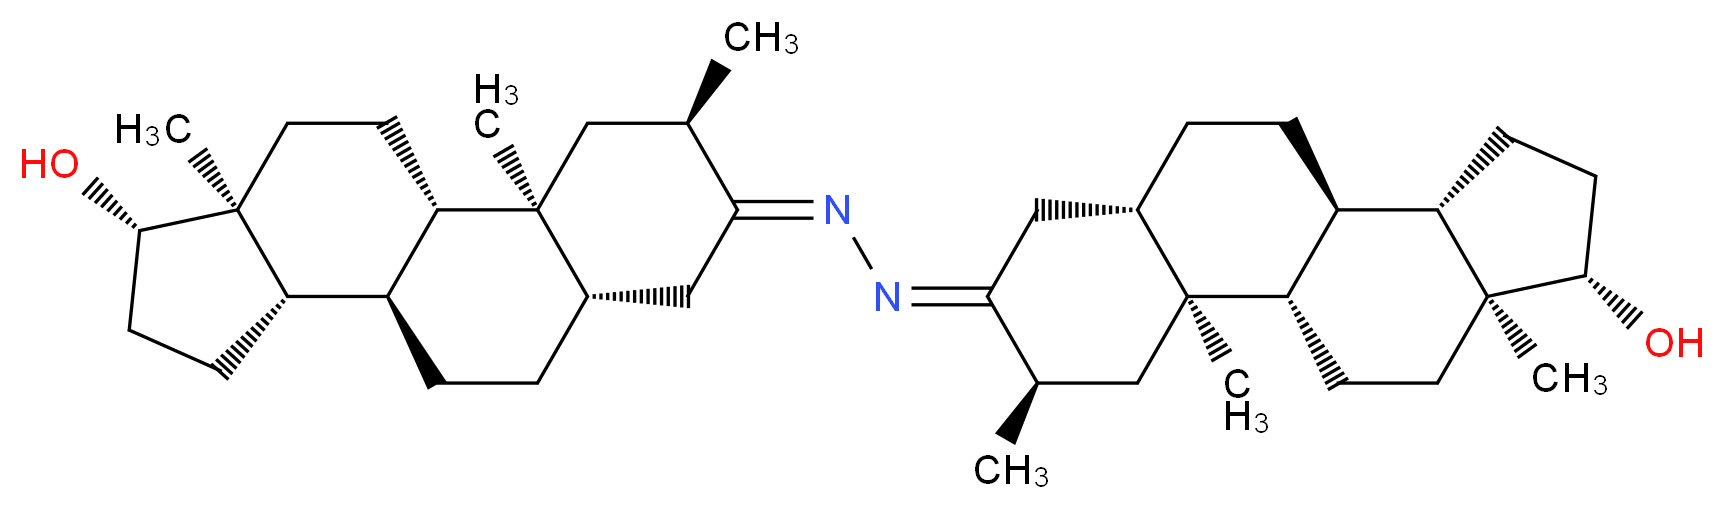 4267-81-6 molecular structure